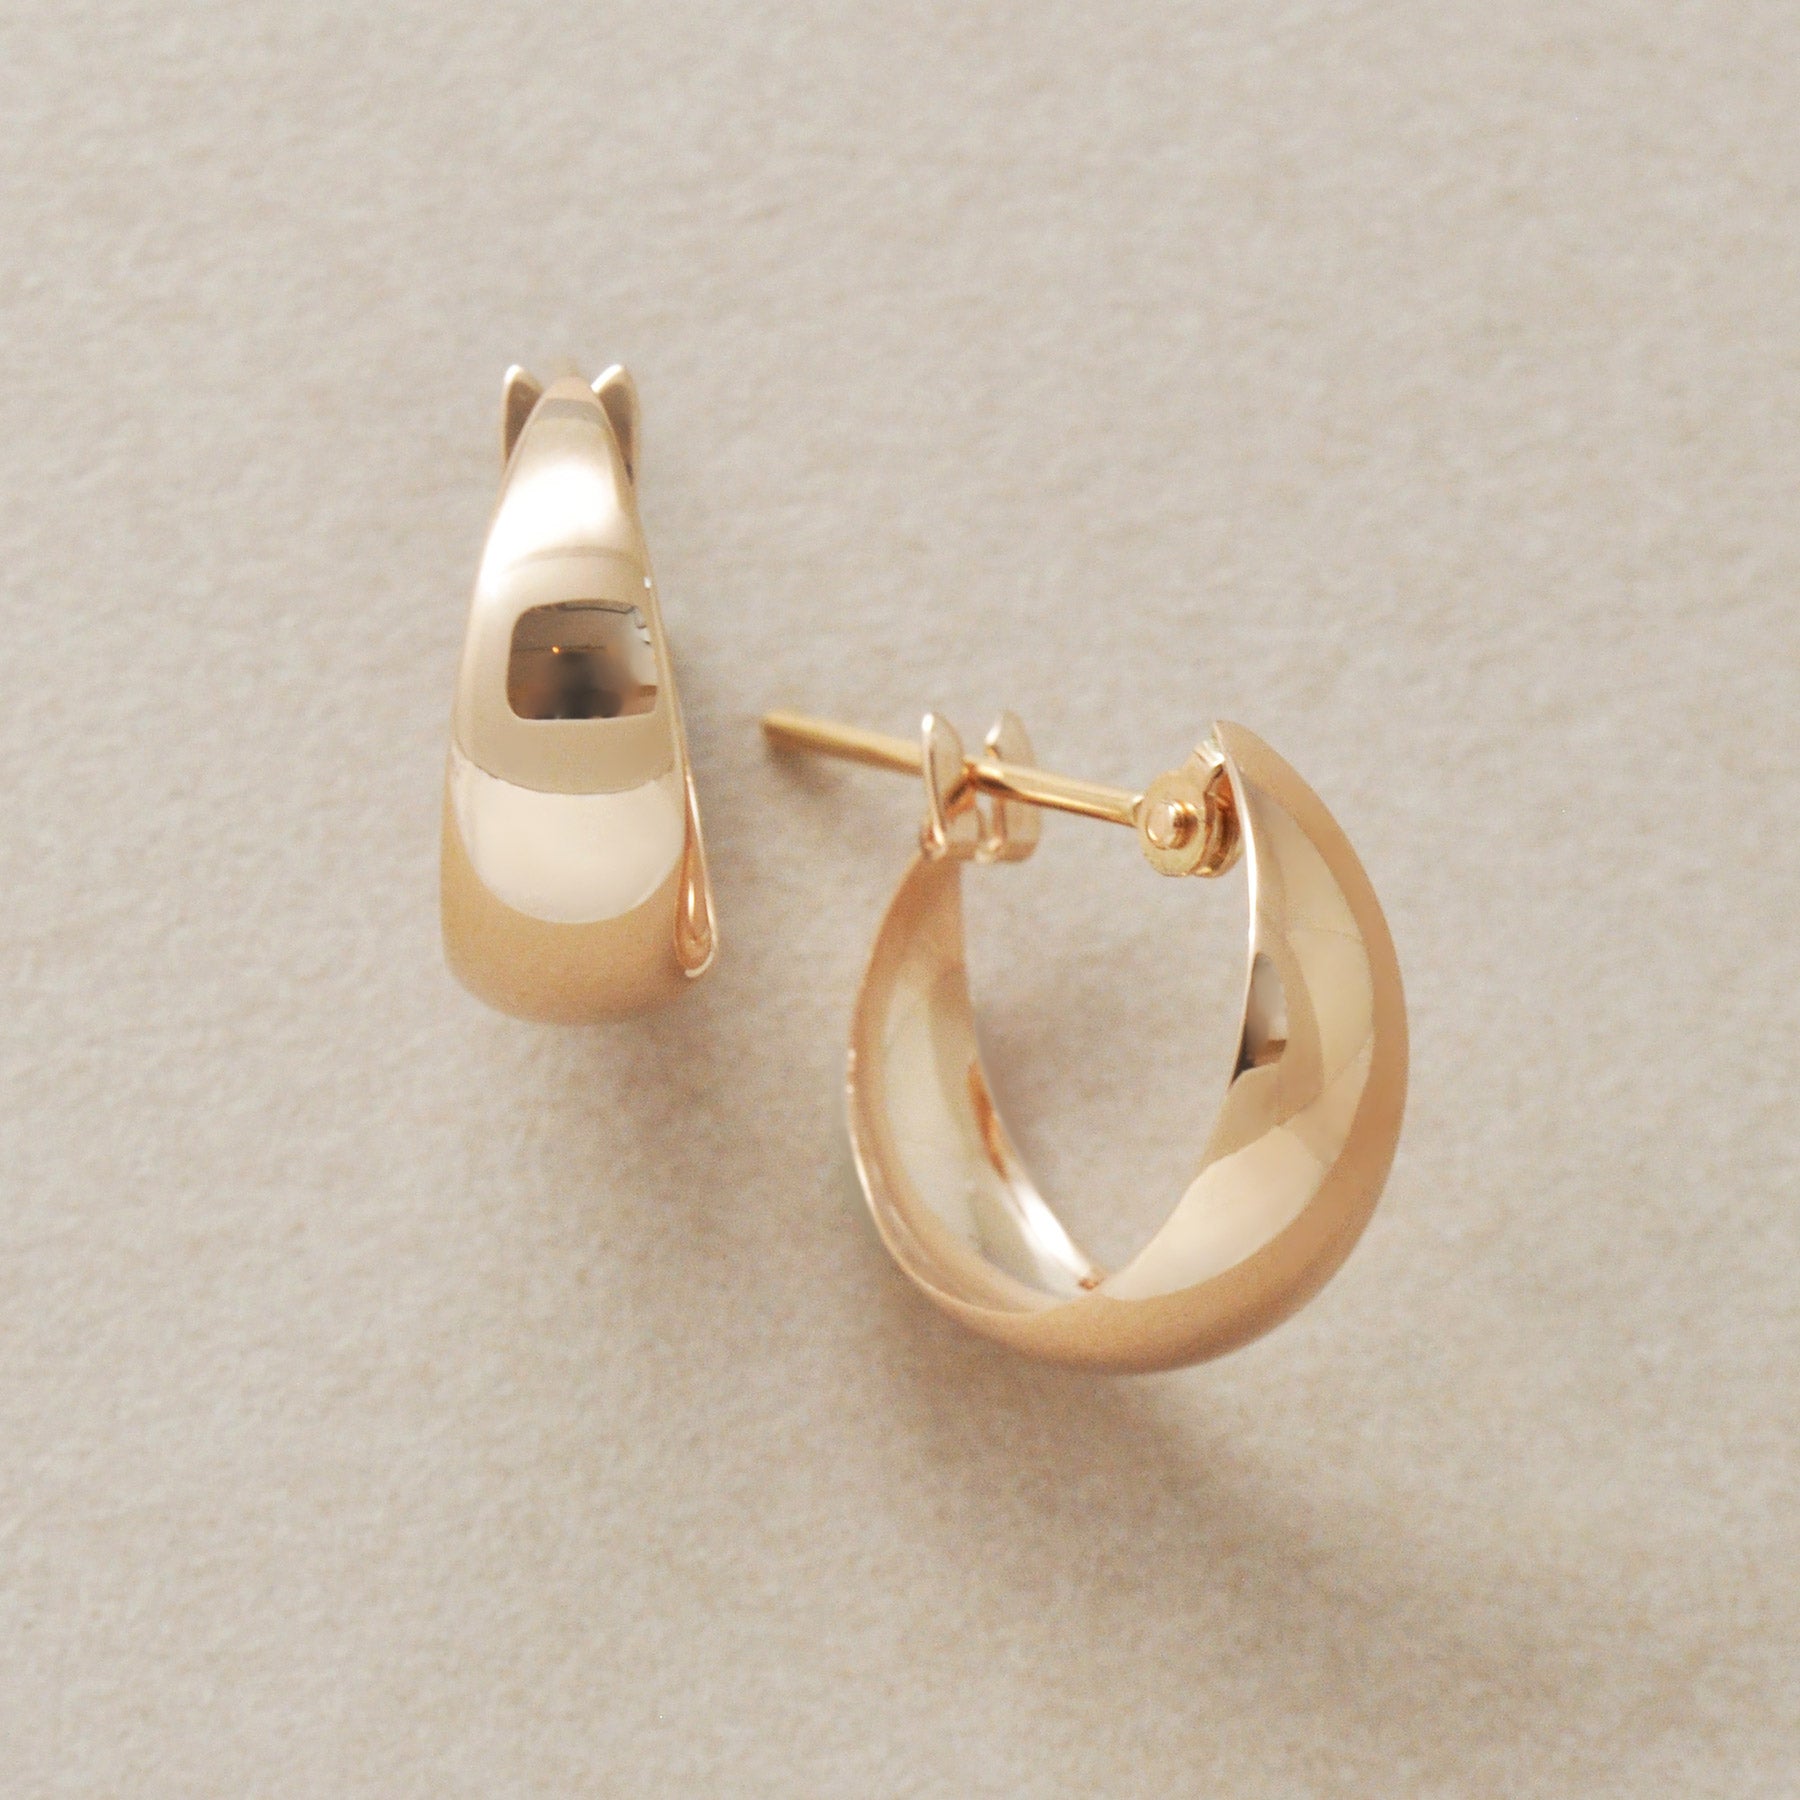 10K Rose Gold Moon Design Hoop Earrings - Product Image